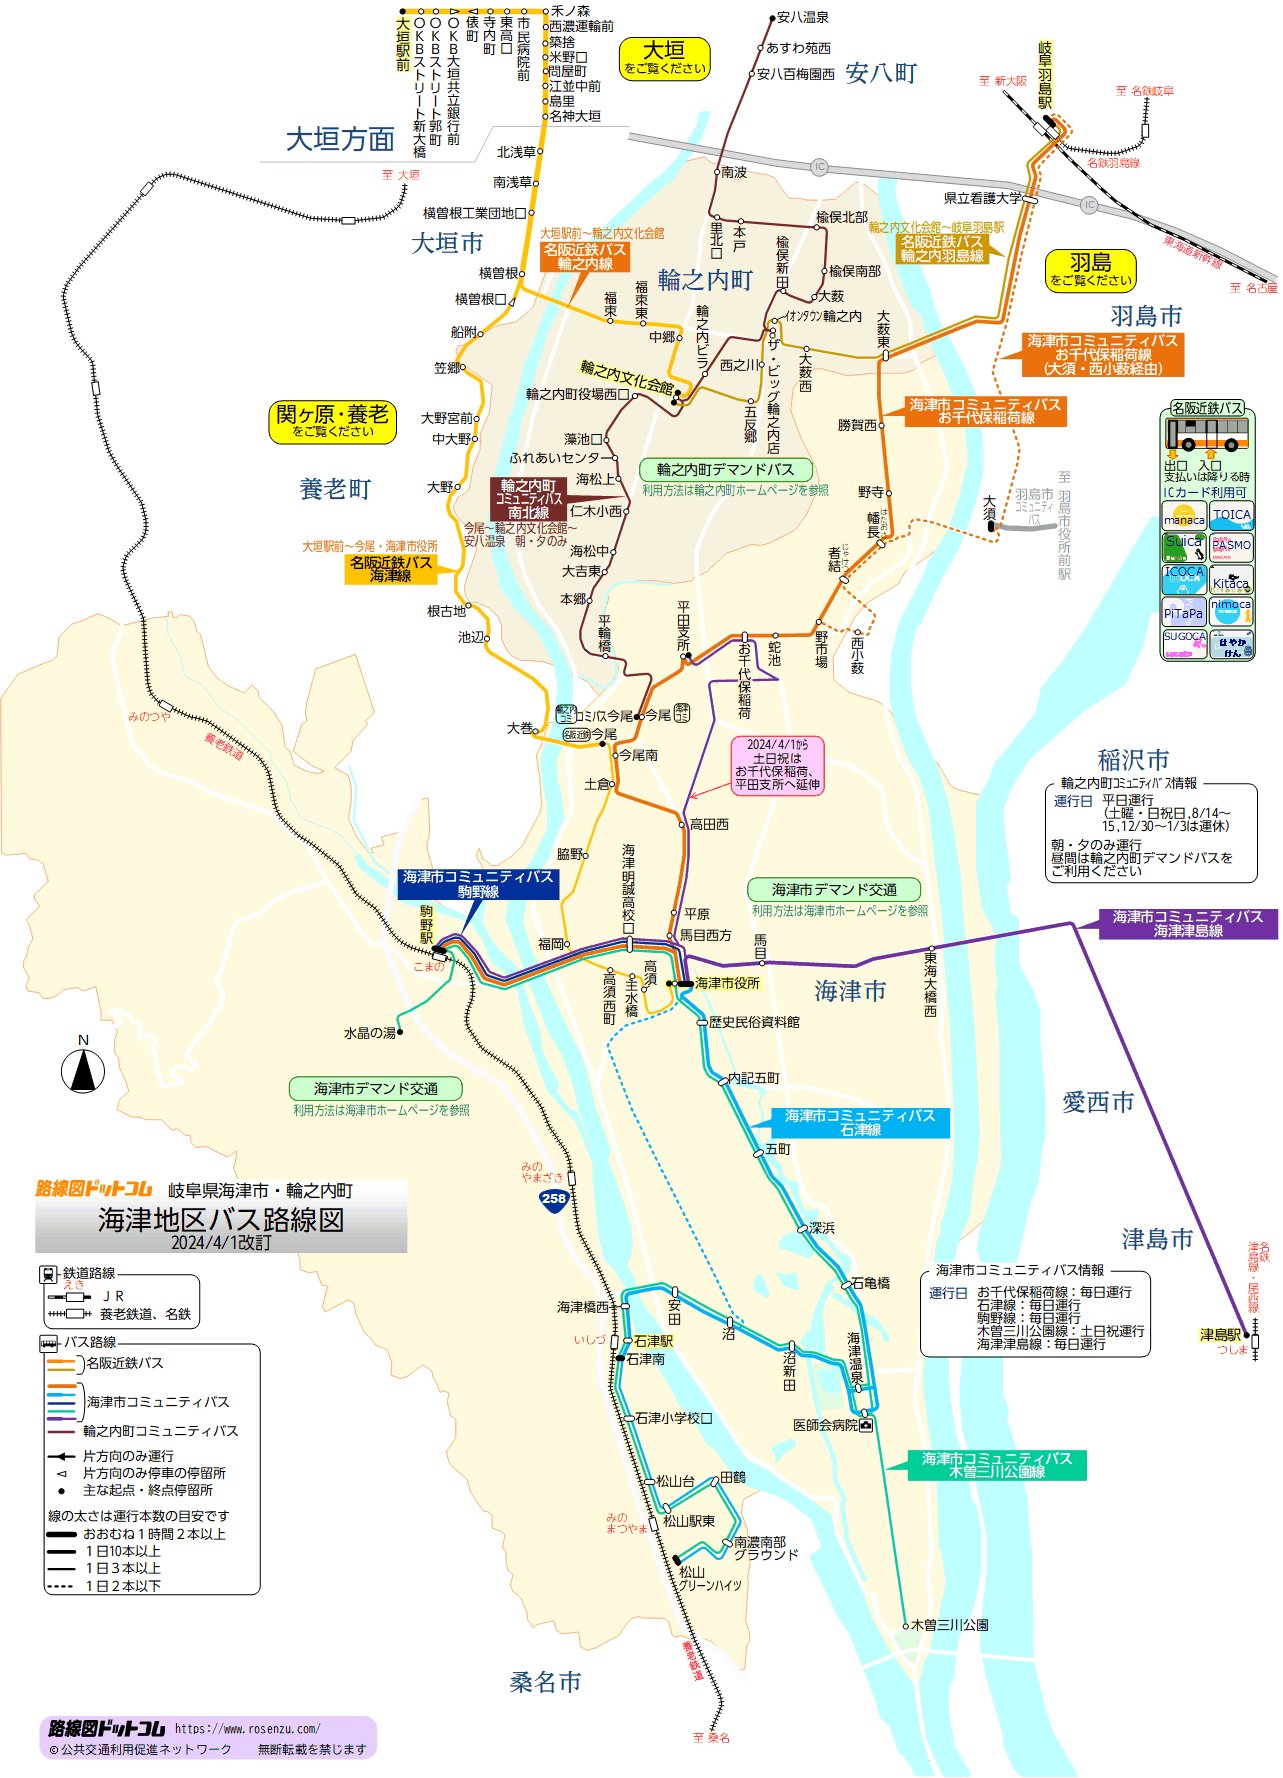 海津地区バス路線図